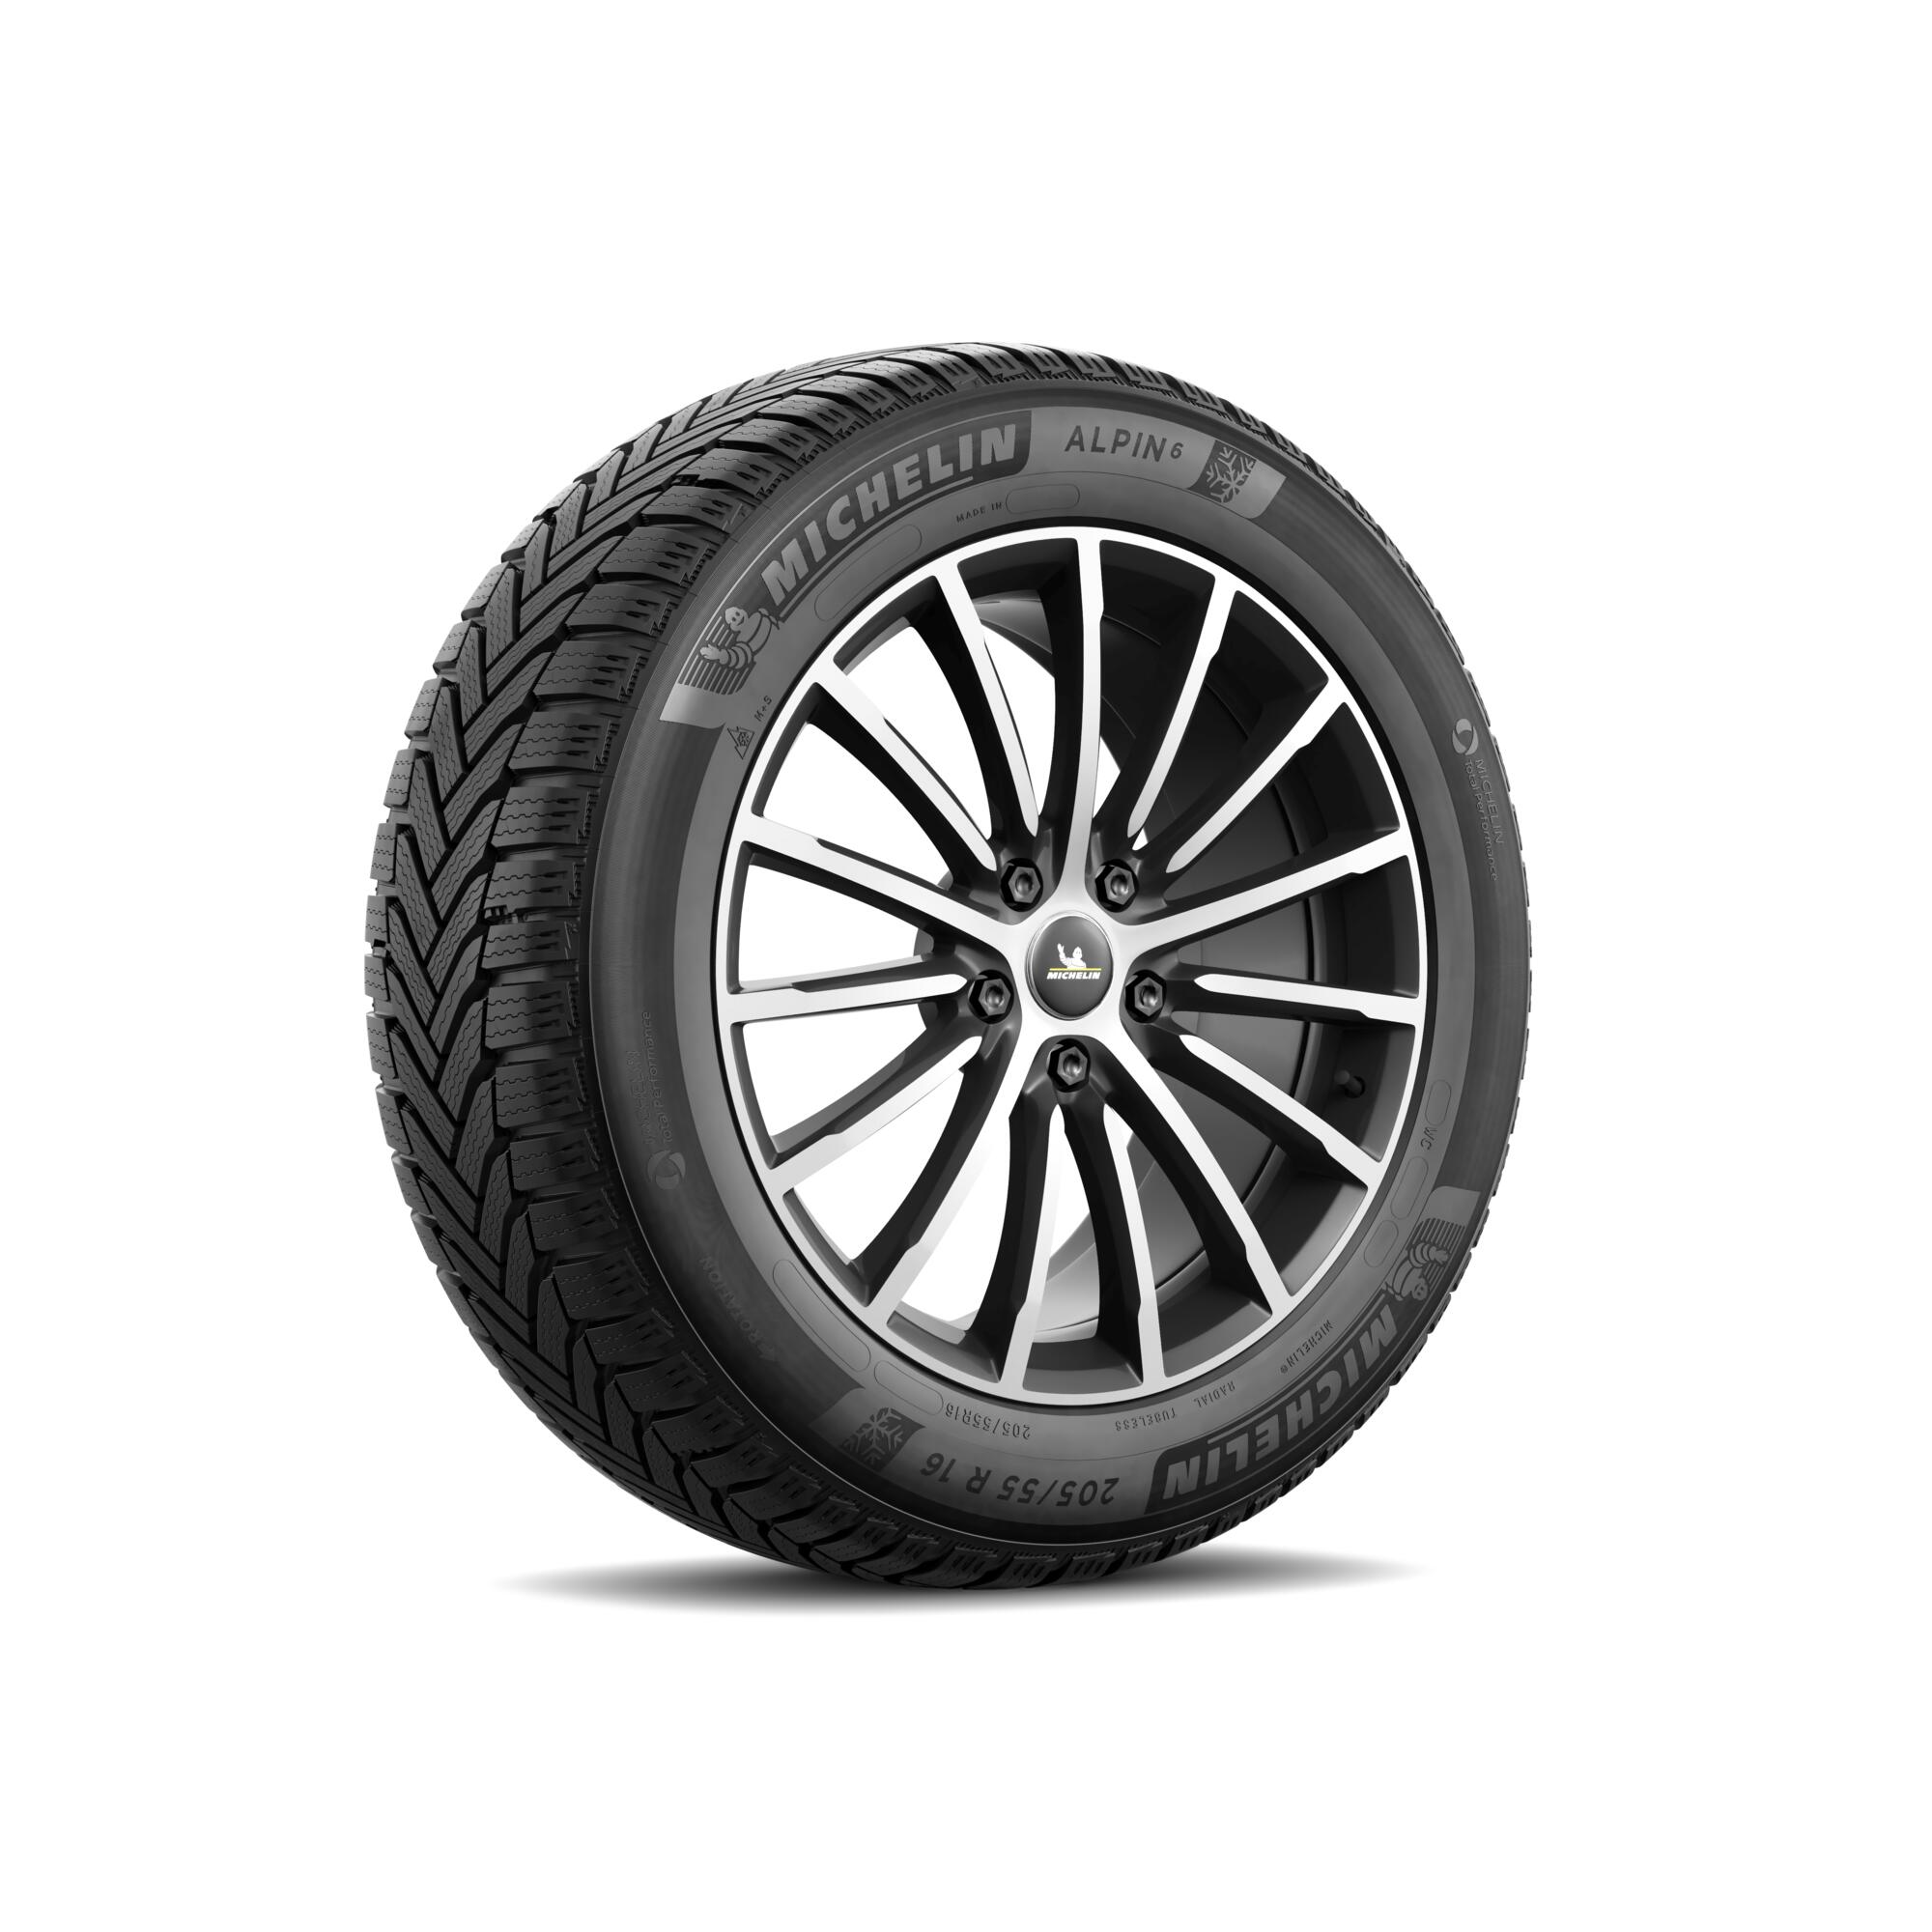 2 ou 4 pneus hiver : combien chausser de pneu hiver? - Michelin